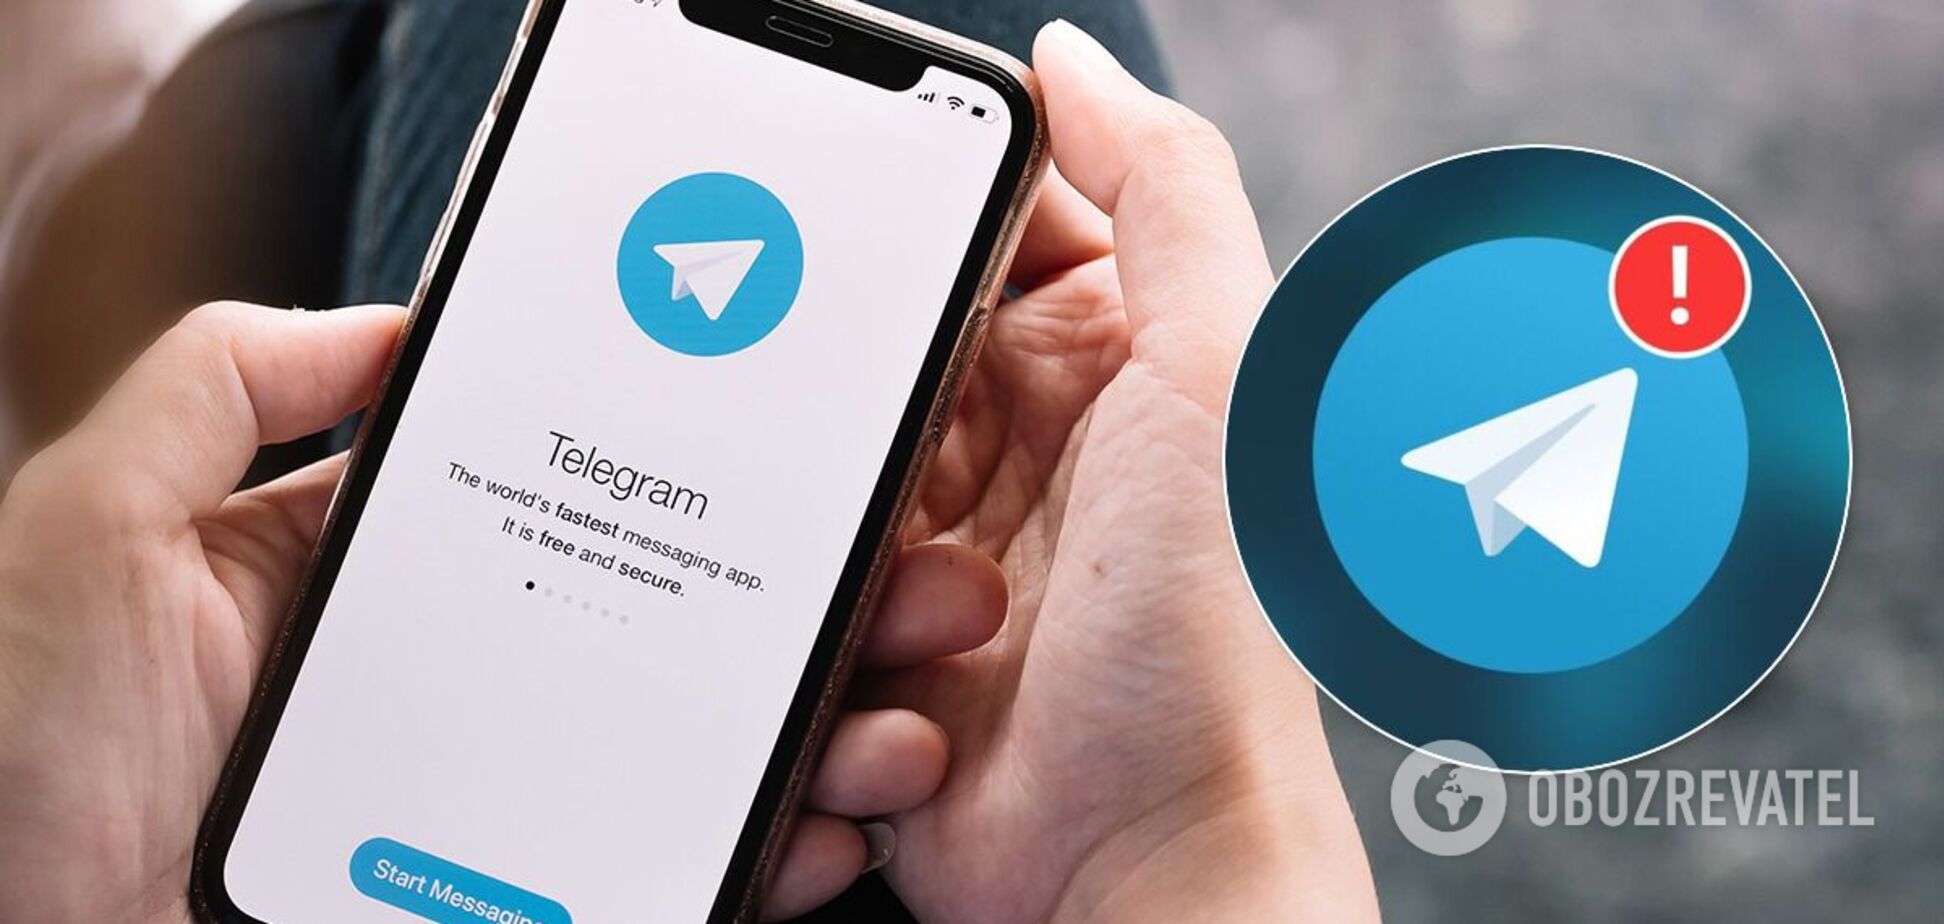 Збій у роботі Telegram 